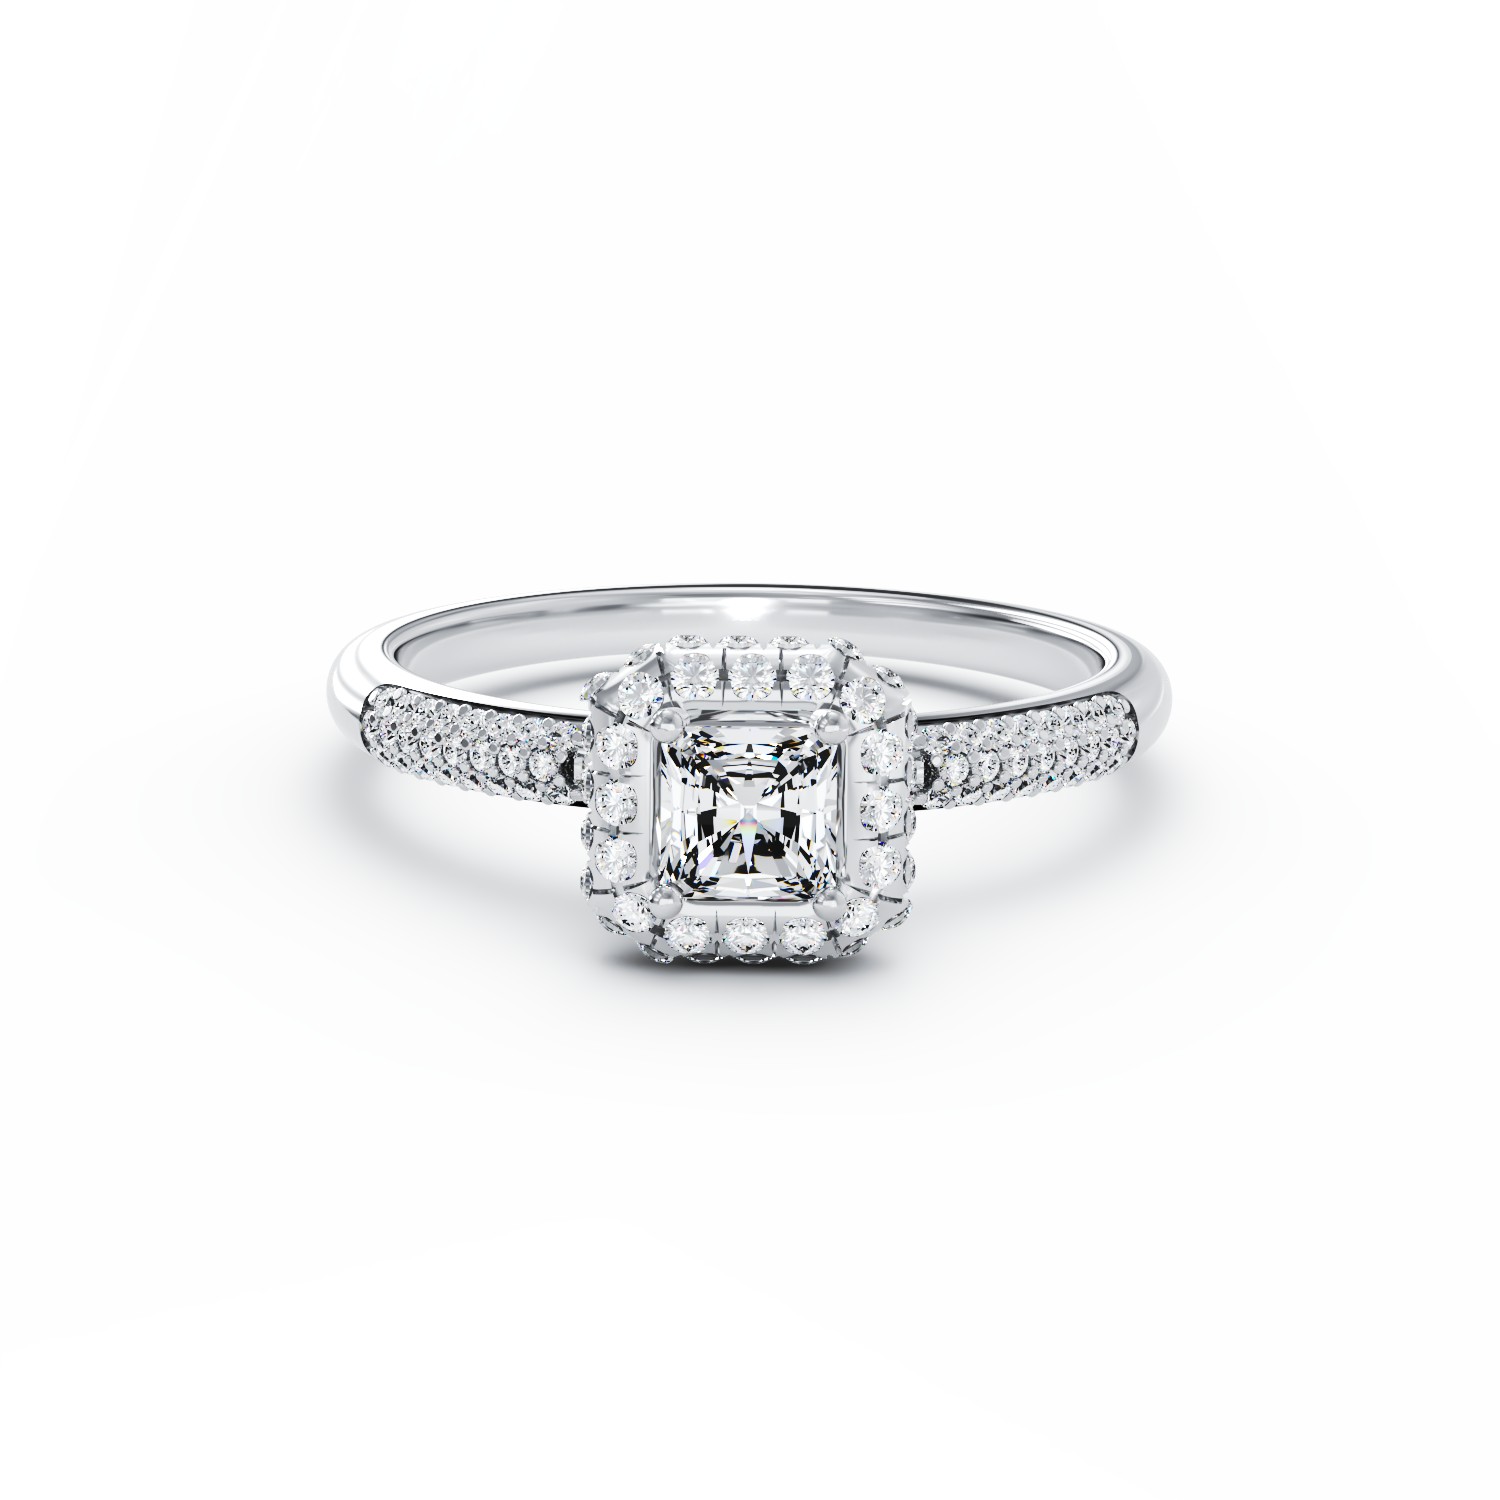 Eljegyzési gyűrű 18K-os fehér aranyból 0,2ct gyémánttal és 0,42ct gyémántokkal. Gramm: 3,09